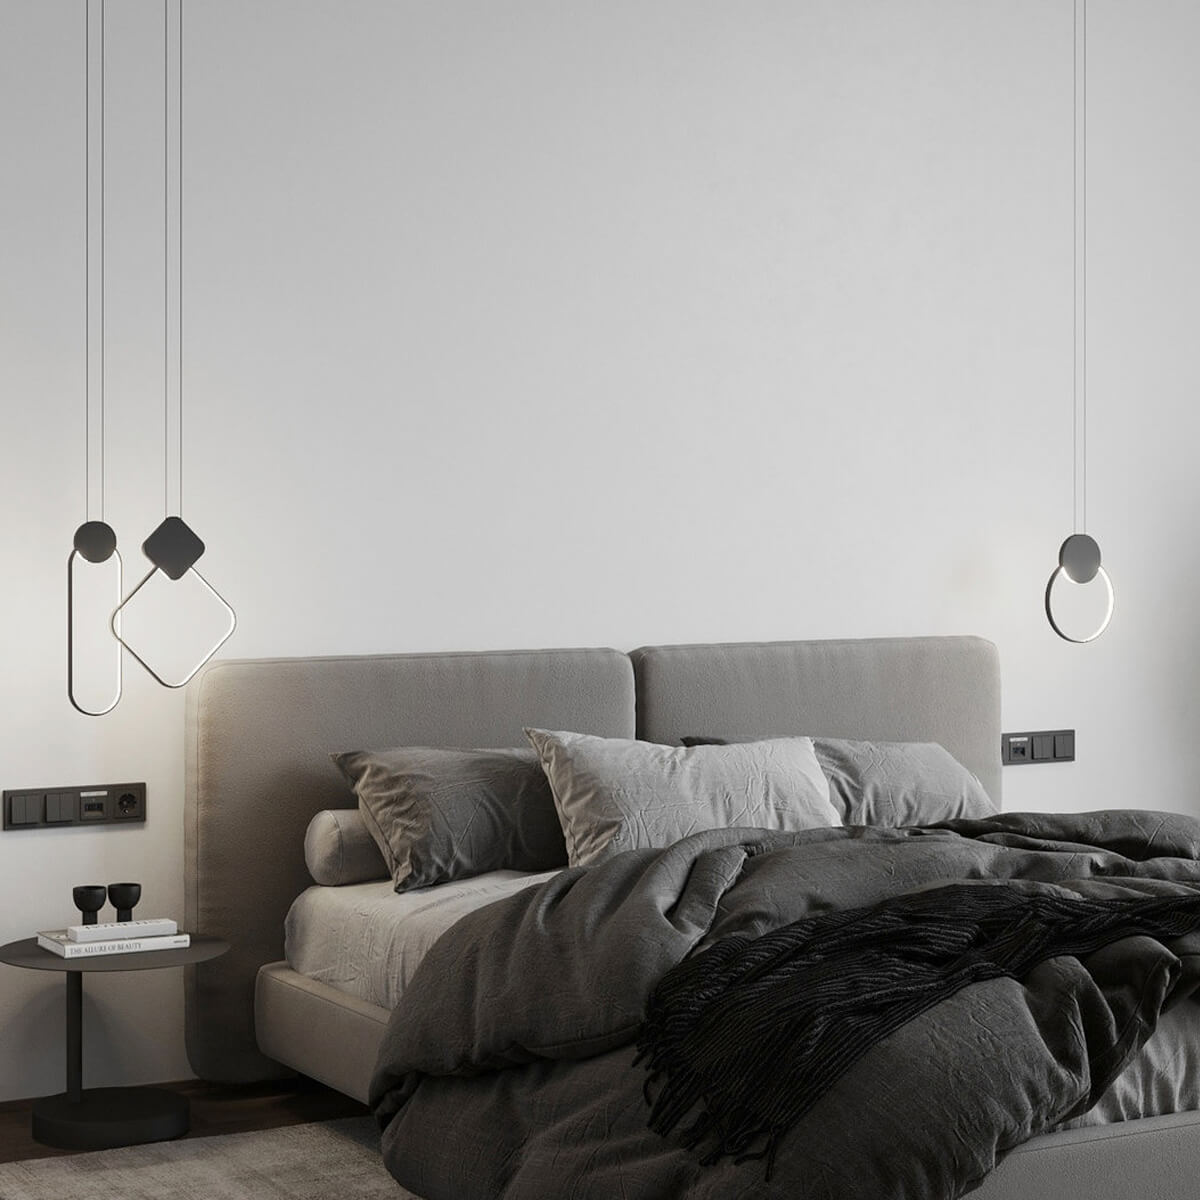 Pendul negru JENNIX SC1 - pentru un living modern, design 2021, colectia de lampi suspendate Domicilio